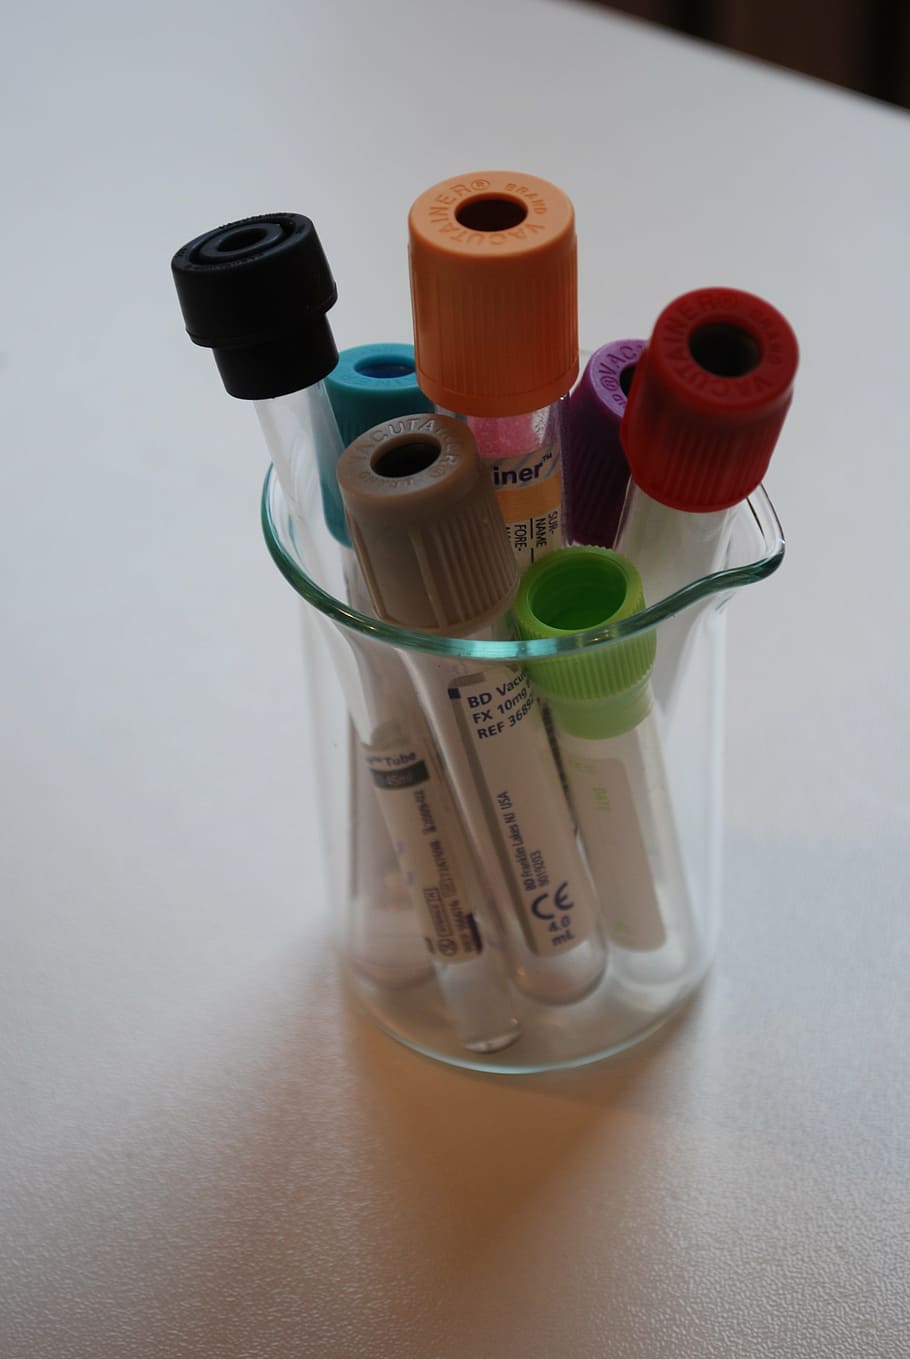 wadah kaca berbagai macam warna, laboratorium, medis, lab, diagnostik, darah, tabung, sarung tangan, penelitian, diagnosis